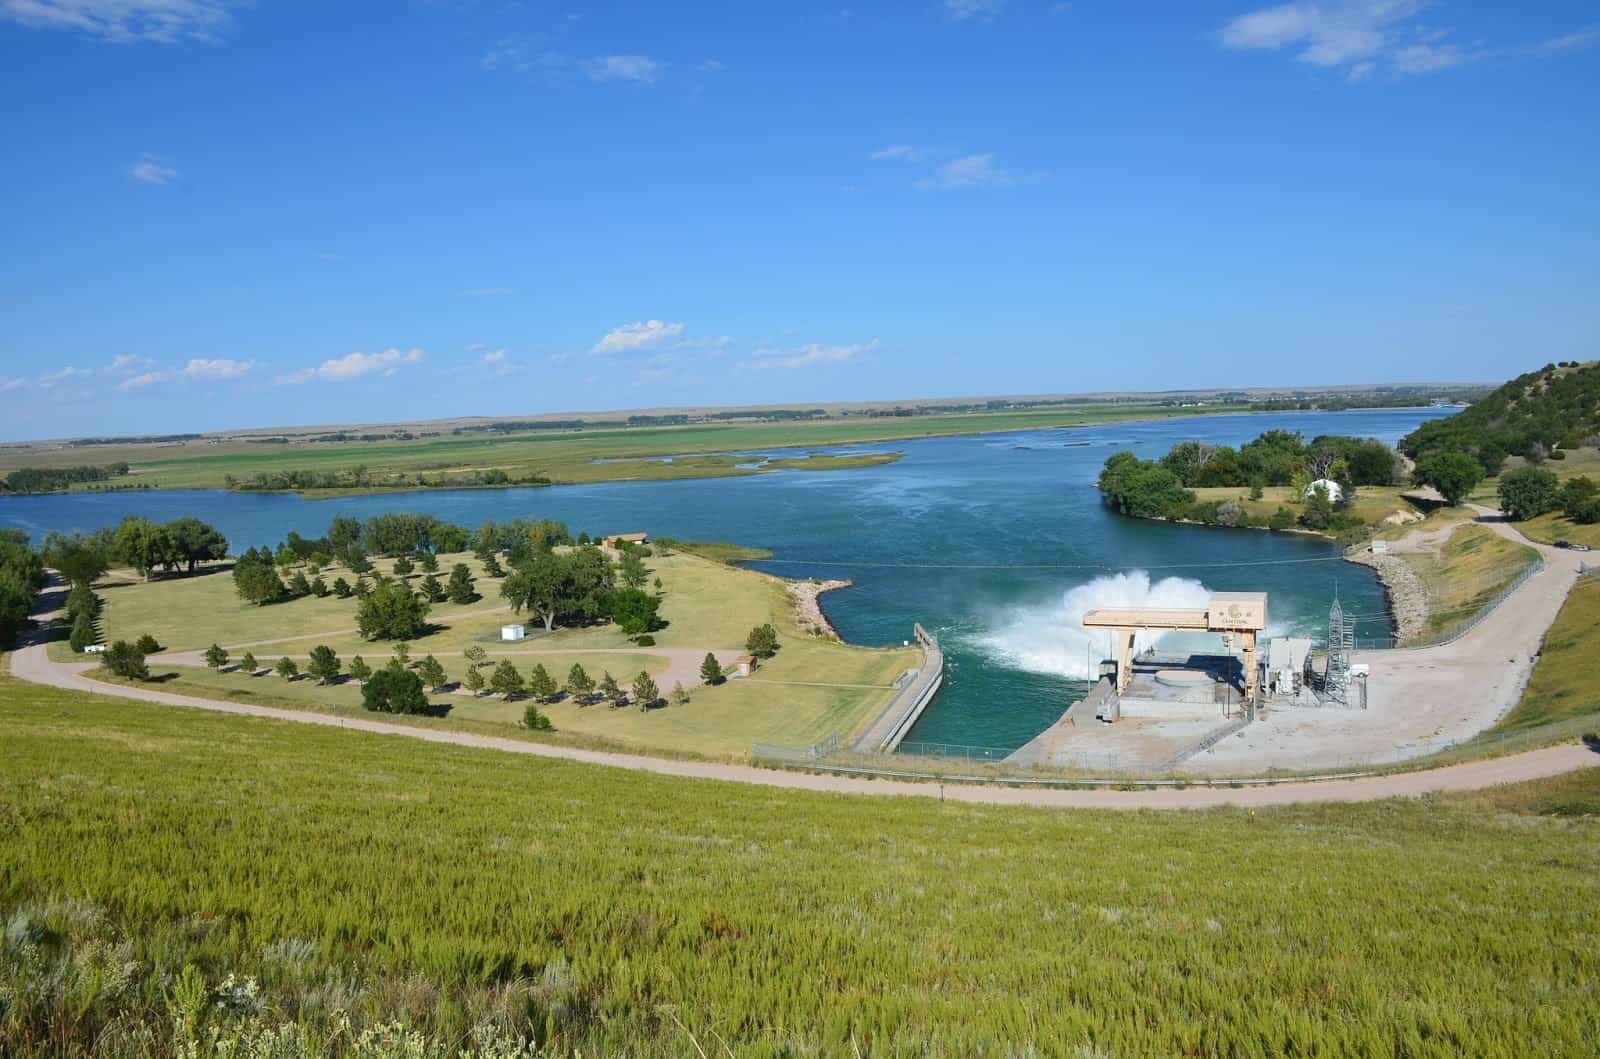 Kingsley Dam on Lake McConaughy Ogallala Nebraska